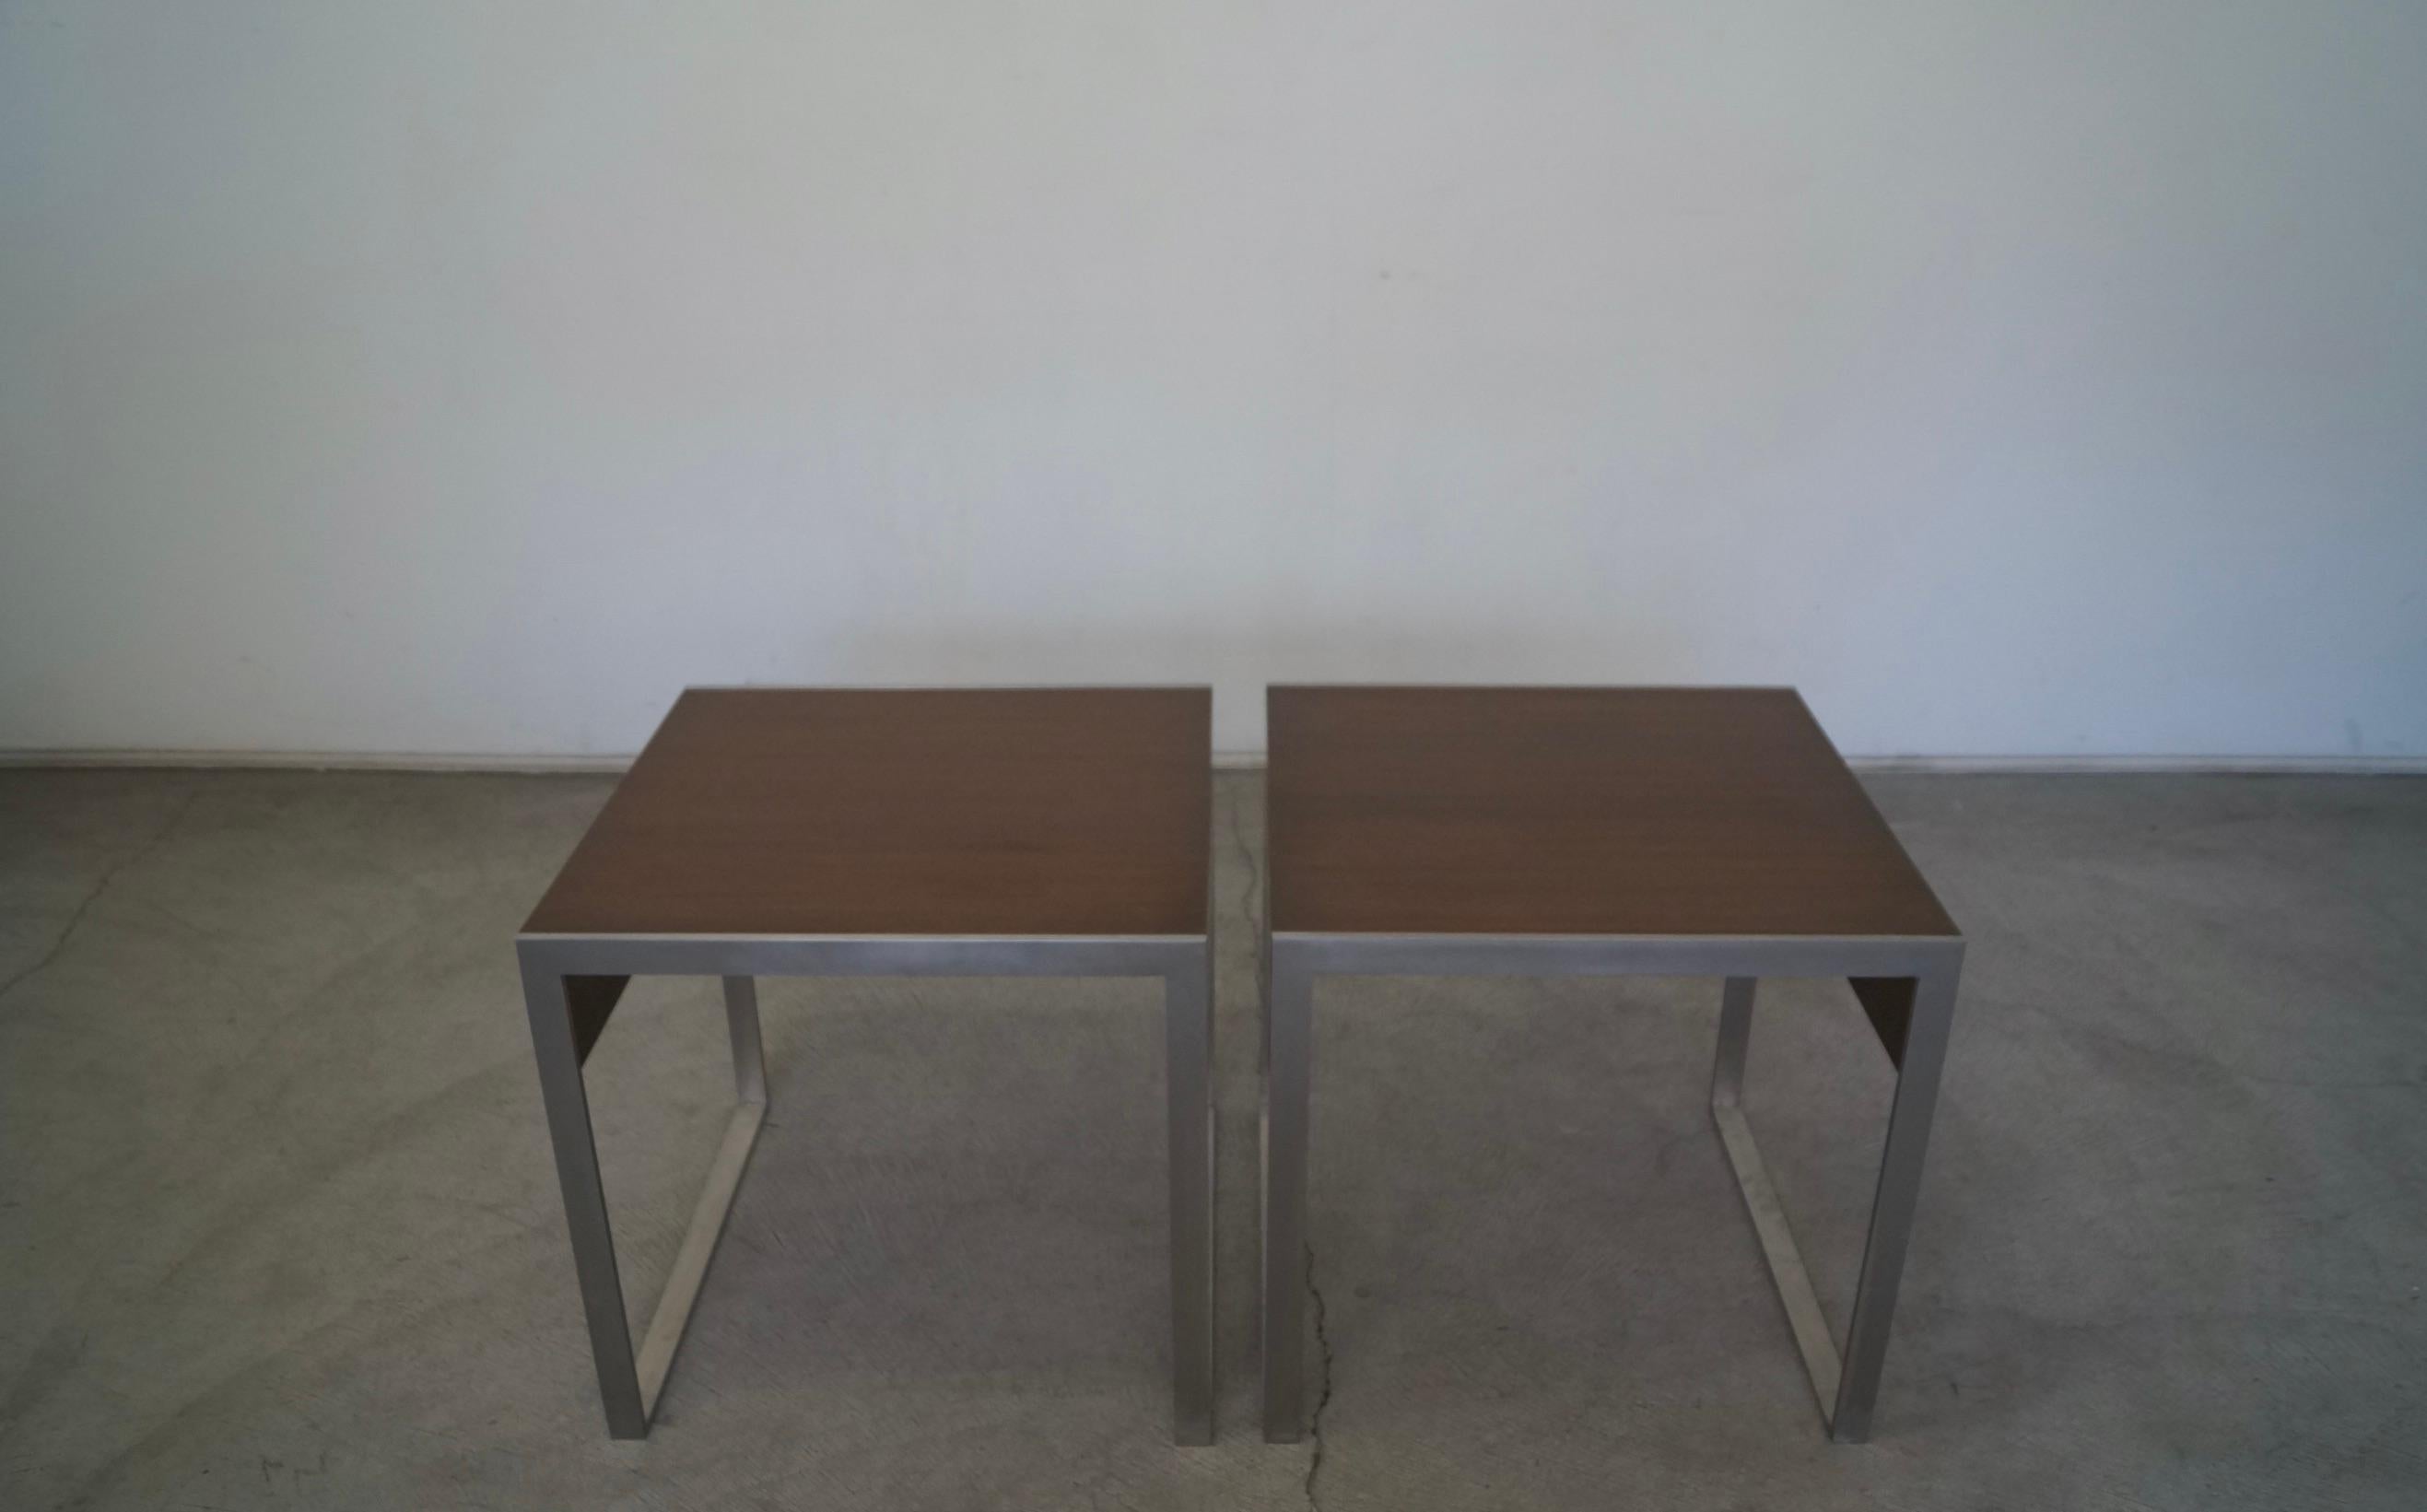 Paar Beistelltische im Mid-Century Modern Stil zu verkaufen. Hergestellt von der High-End-Möbelfirma Bernhardt Furniture, und hier in den USA produziert. Diese sind professionell in Nussbaum nachgearbeitet worden. Sehr solide und gut gemachte Tische